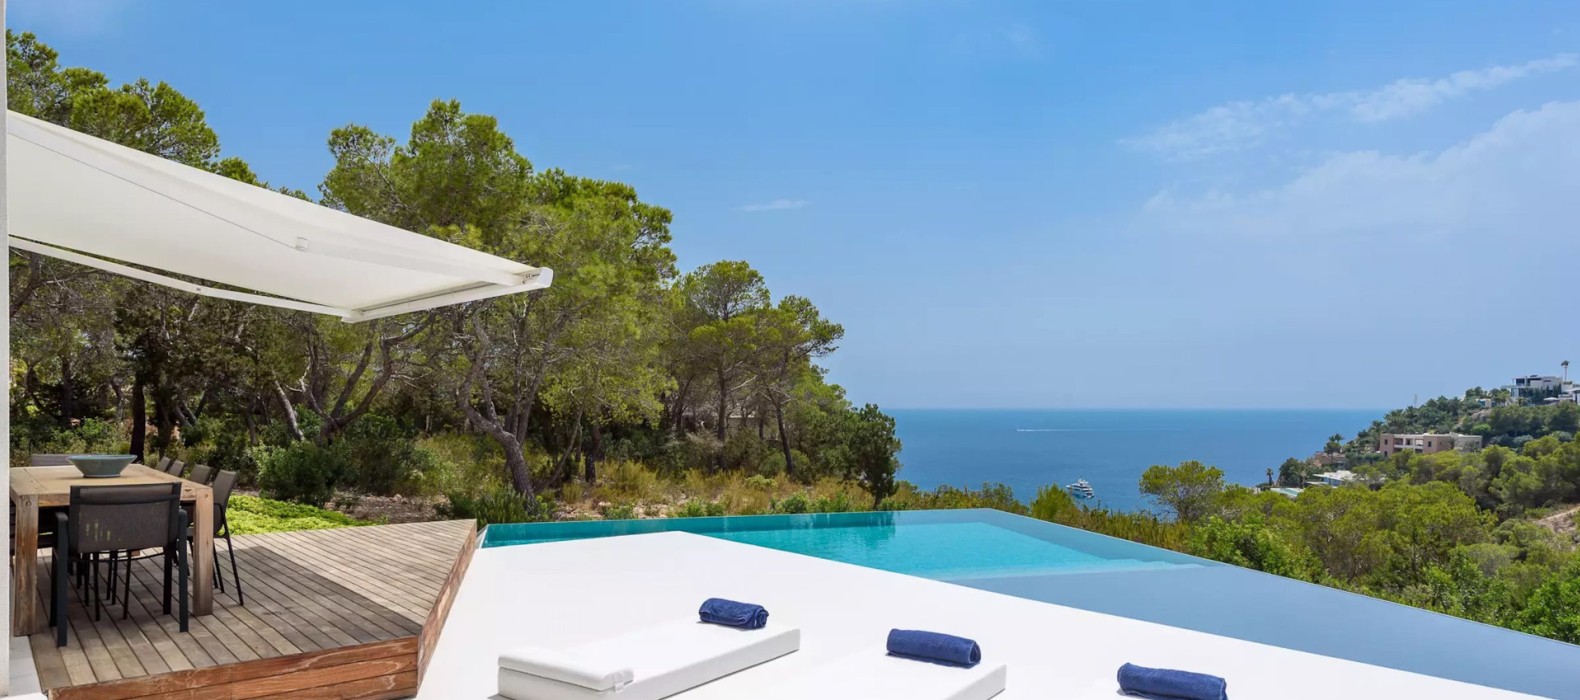 Pool area of Villa Majestado in Ibiza